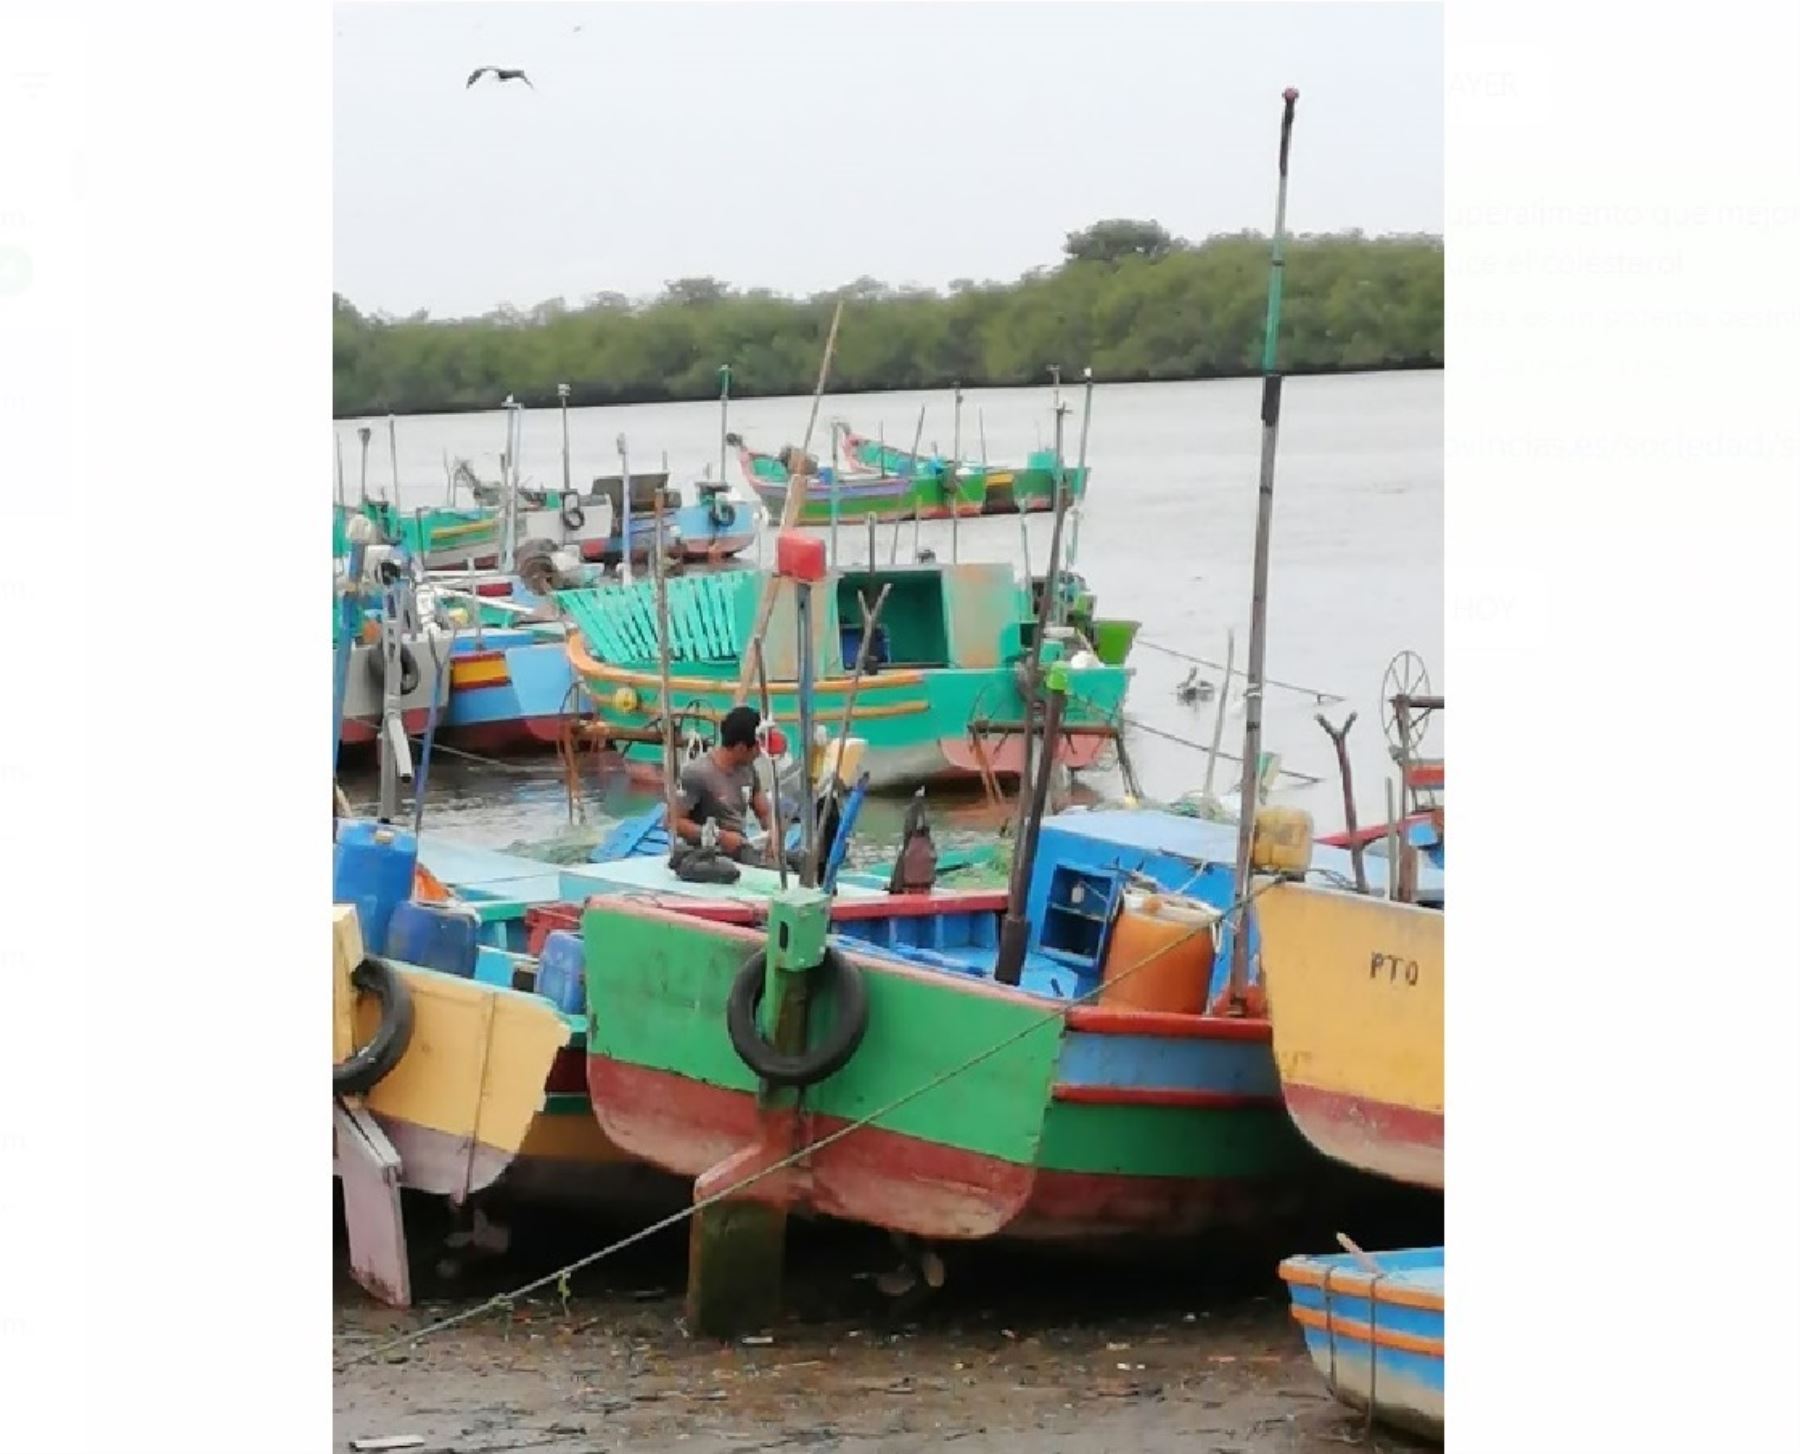 Los pescadores artesanales fueron los principales afectados por los fuertes oleajes que se presentaron en el litoral peruano. Foto: ANDINA/difusión.